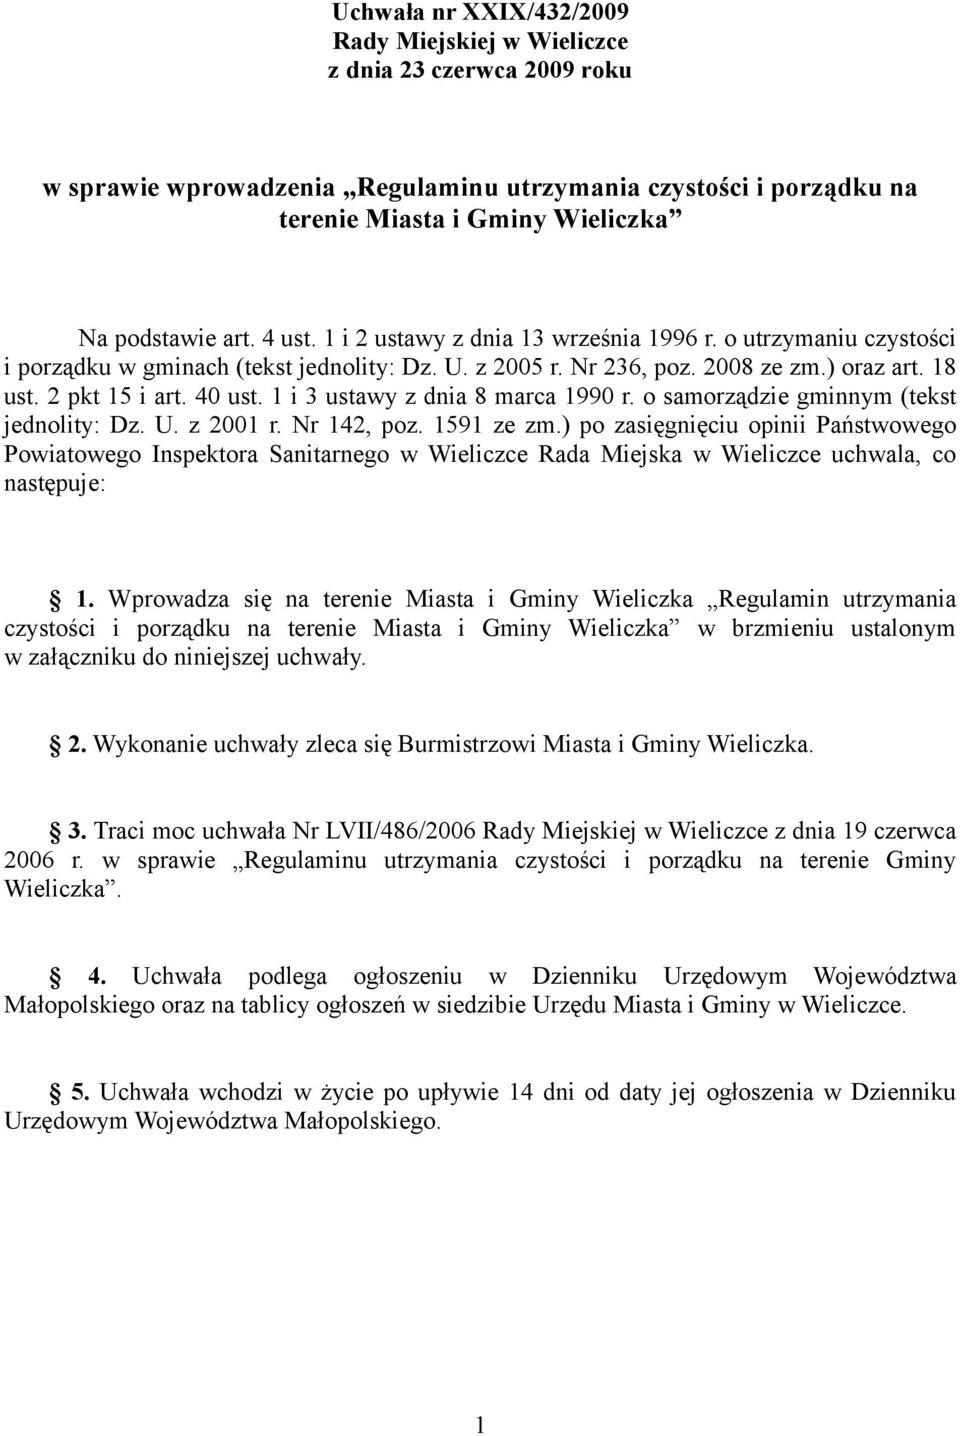 1 i 3 ustawy z dnia 8 marca 1990 r. o samorządzie gminnym (tekst jednolity: Dz. U. z 2001 r. Nr 142, poz. 1591 ze zm.